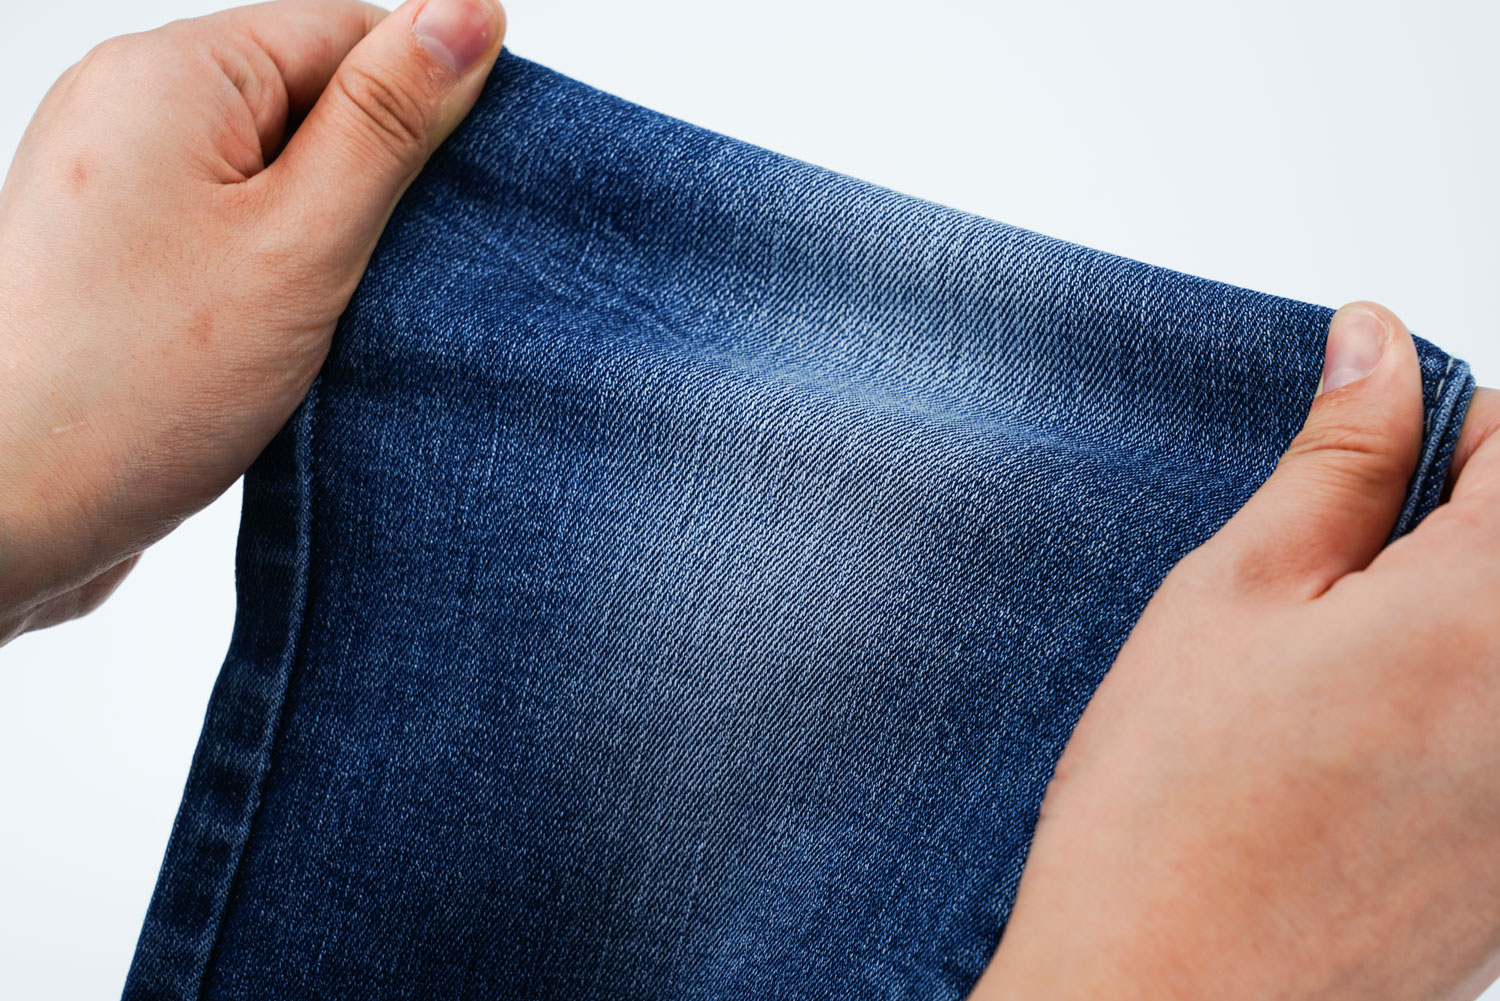 Is Wearing Denim Jeans on Female Halal? 2